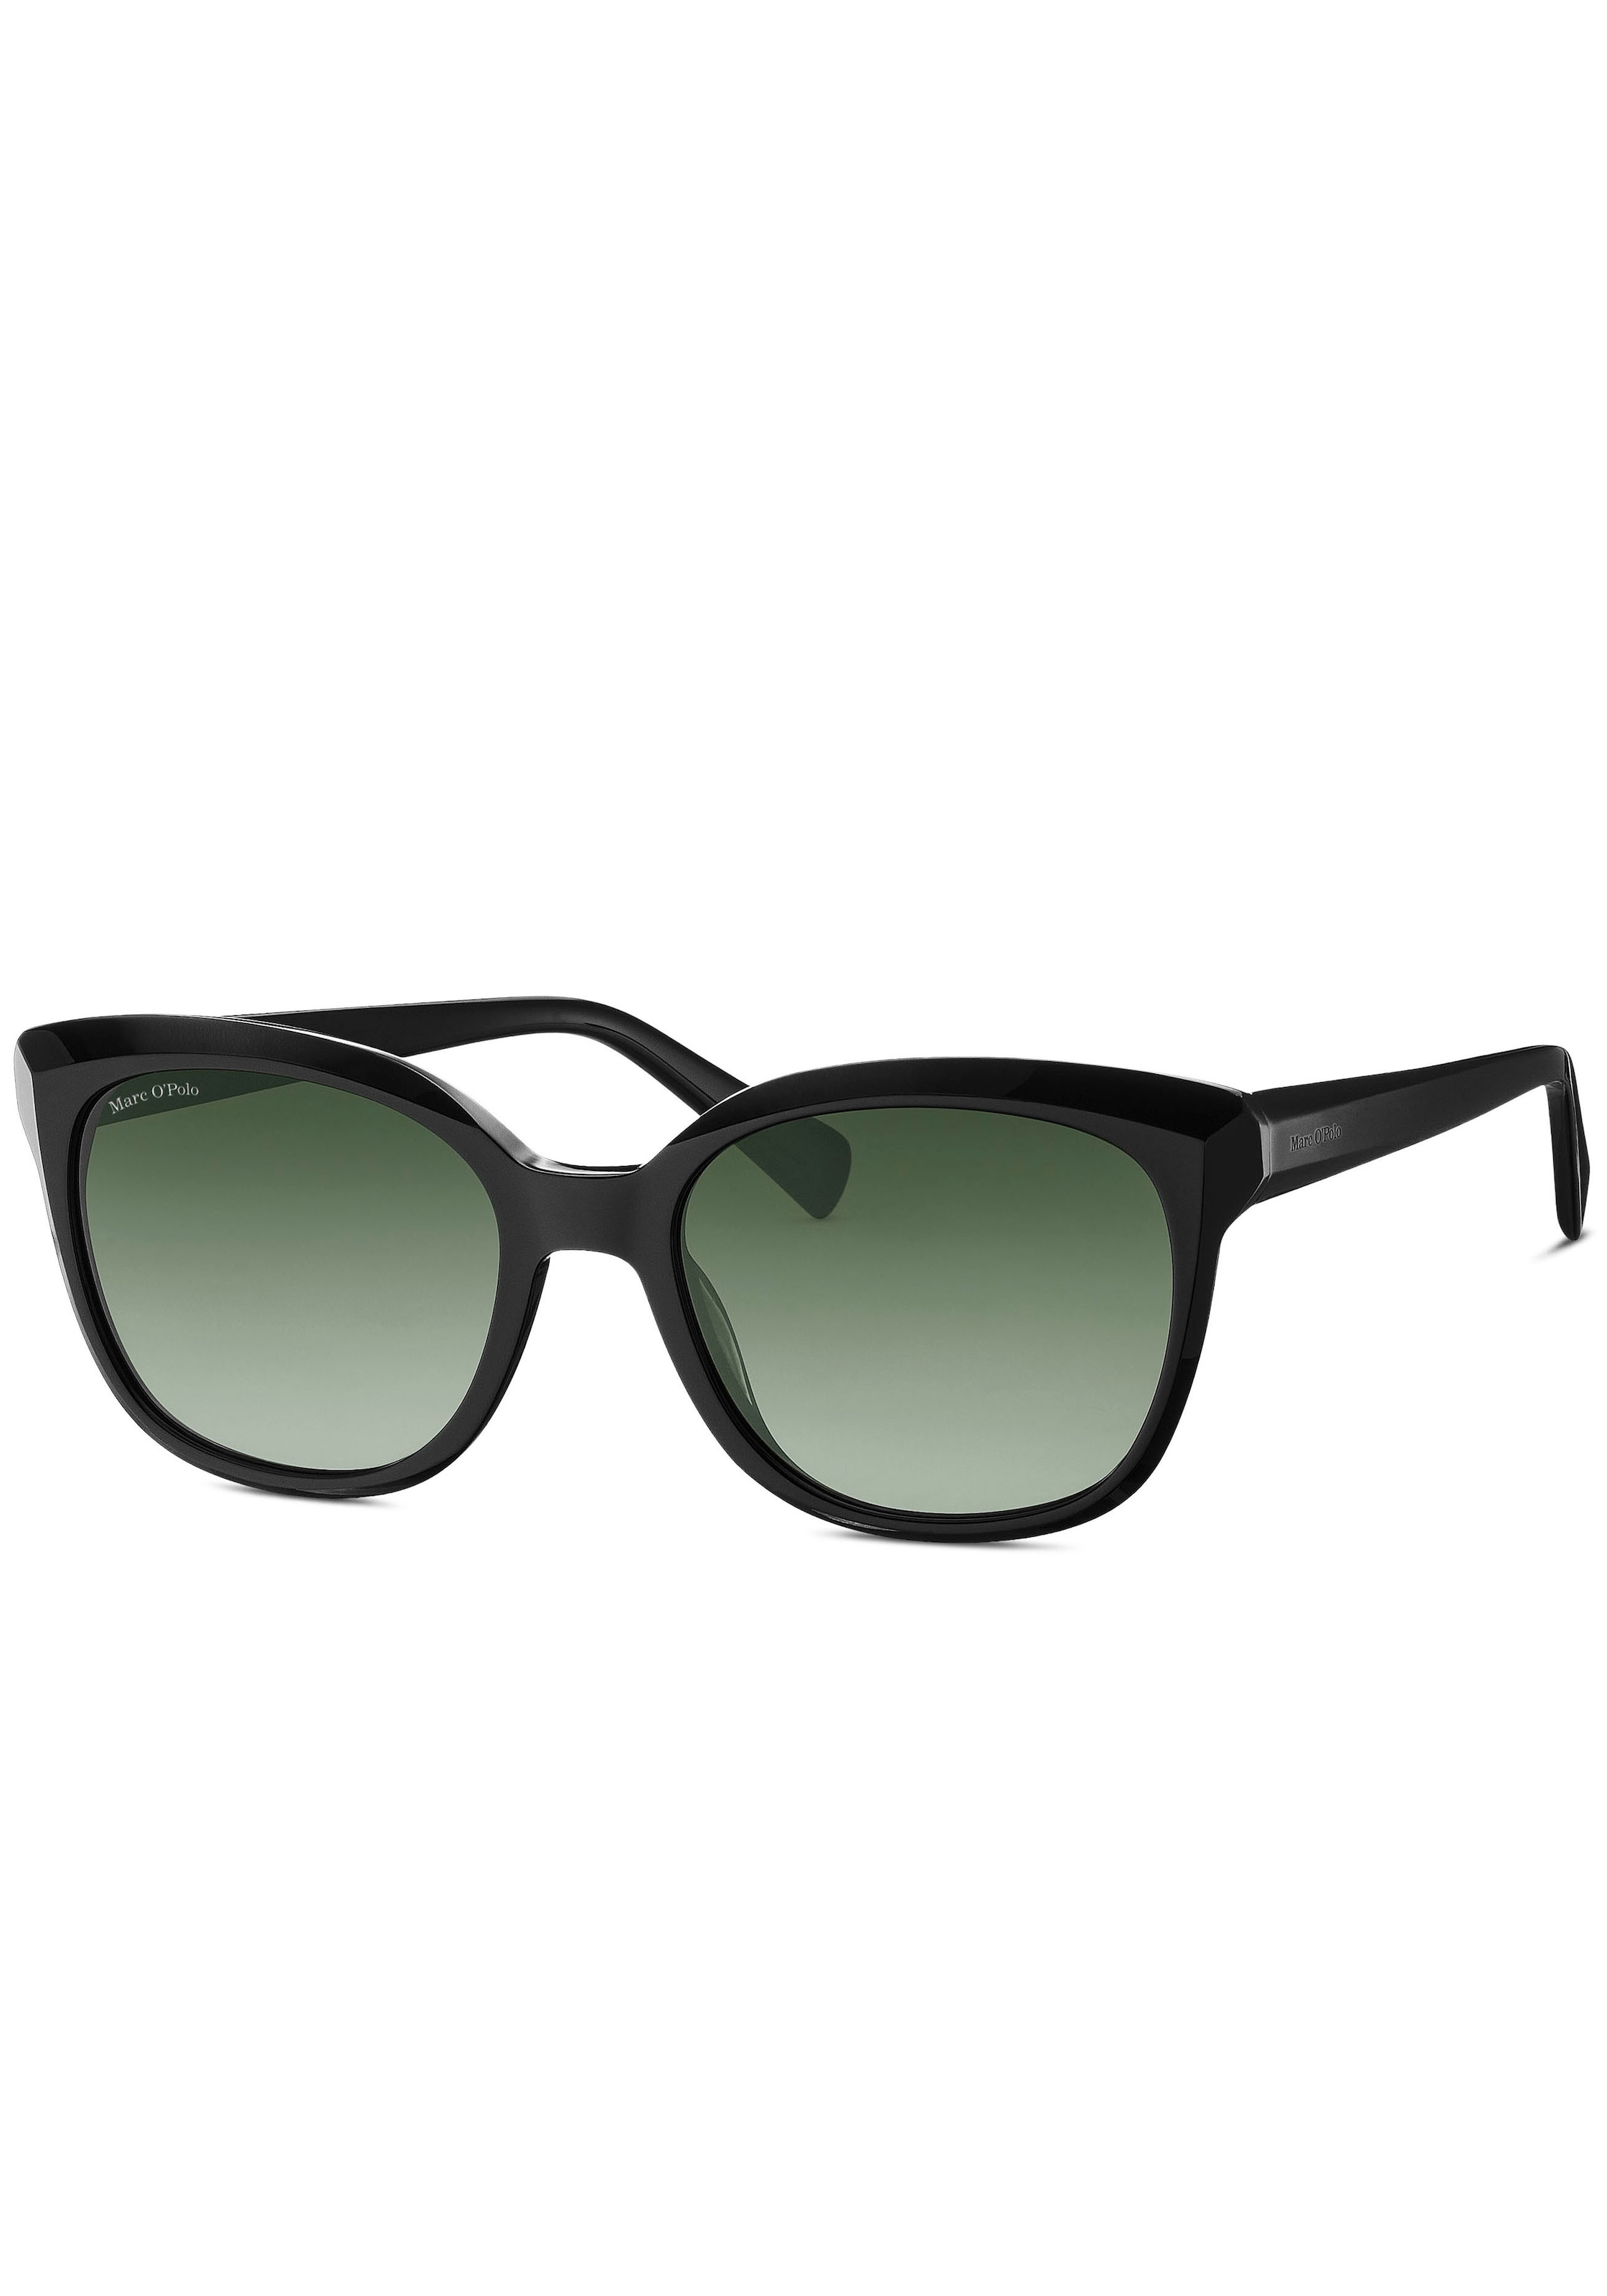 Sonnenbrille »Modell 506196«, Karree-Form